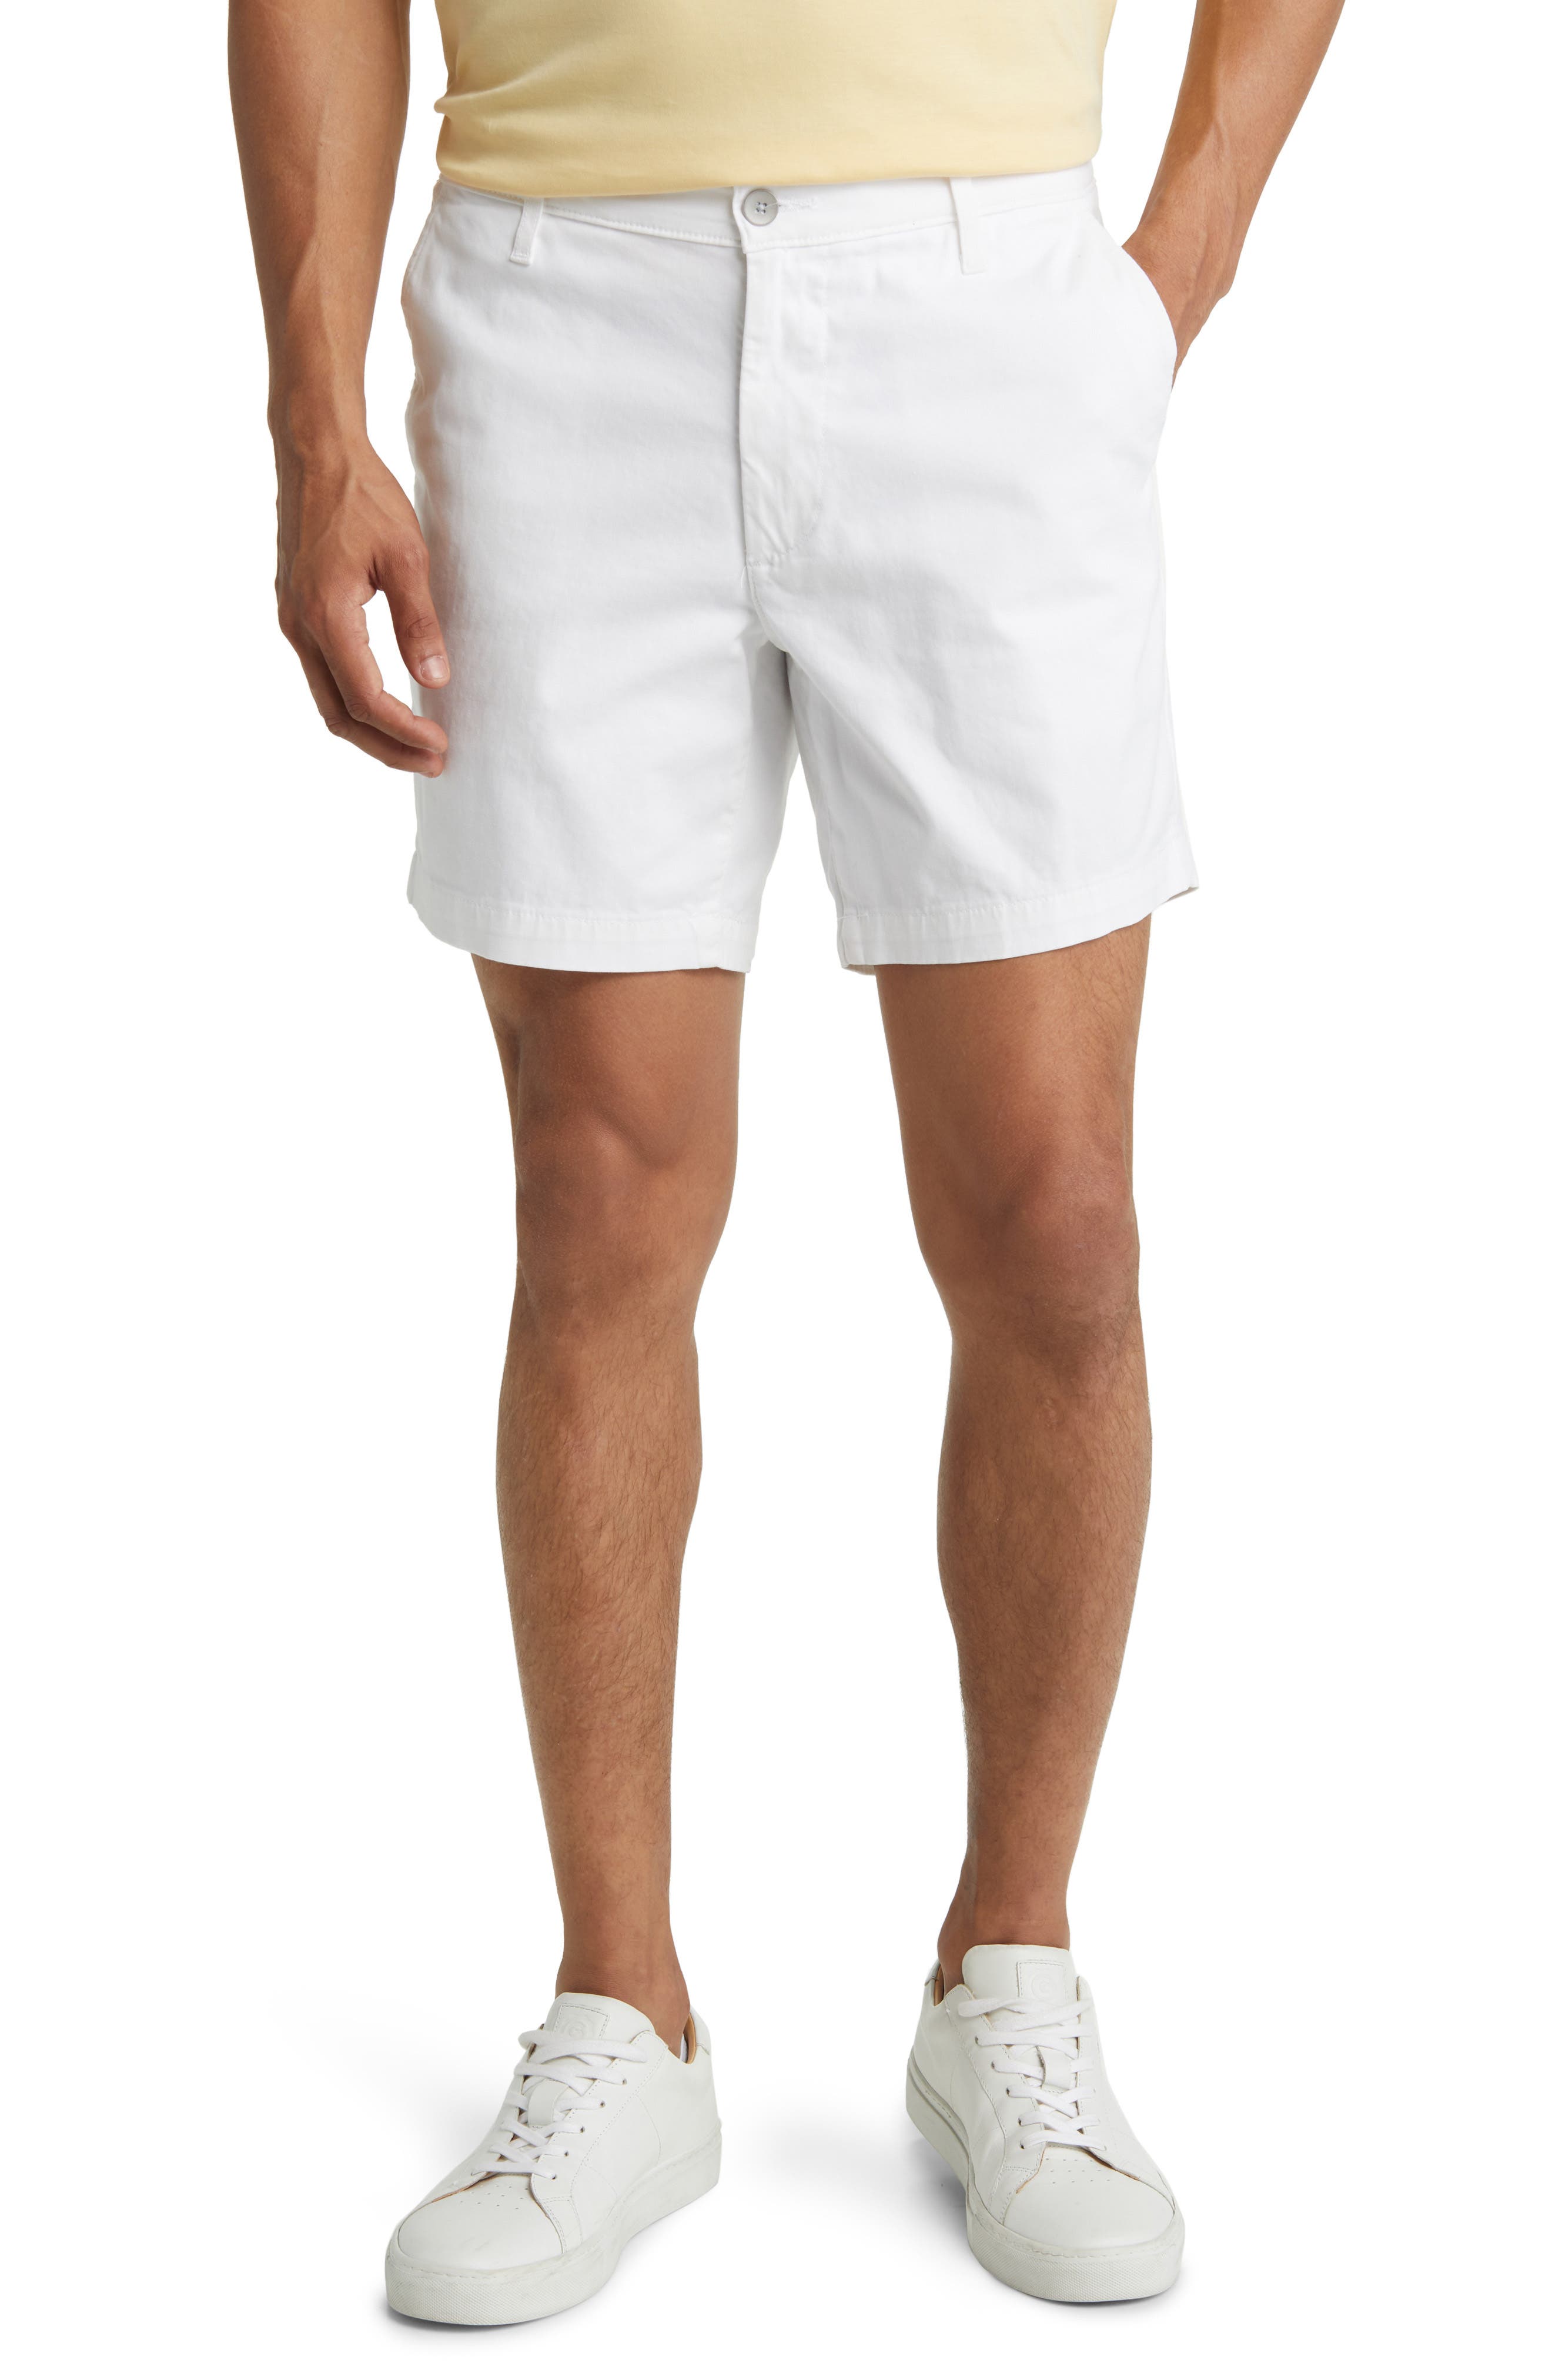 white dress shorts